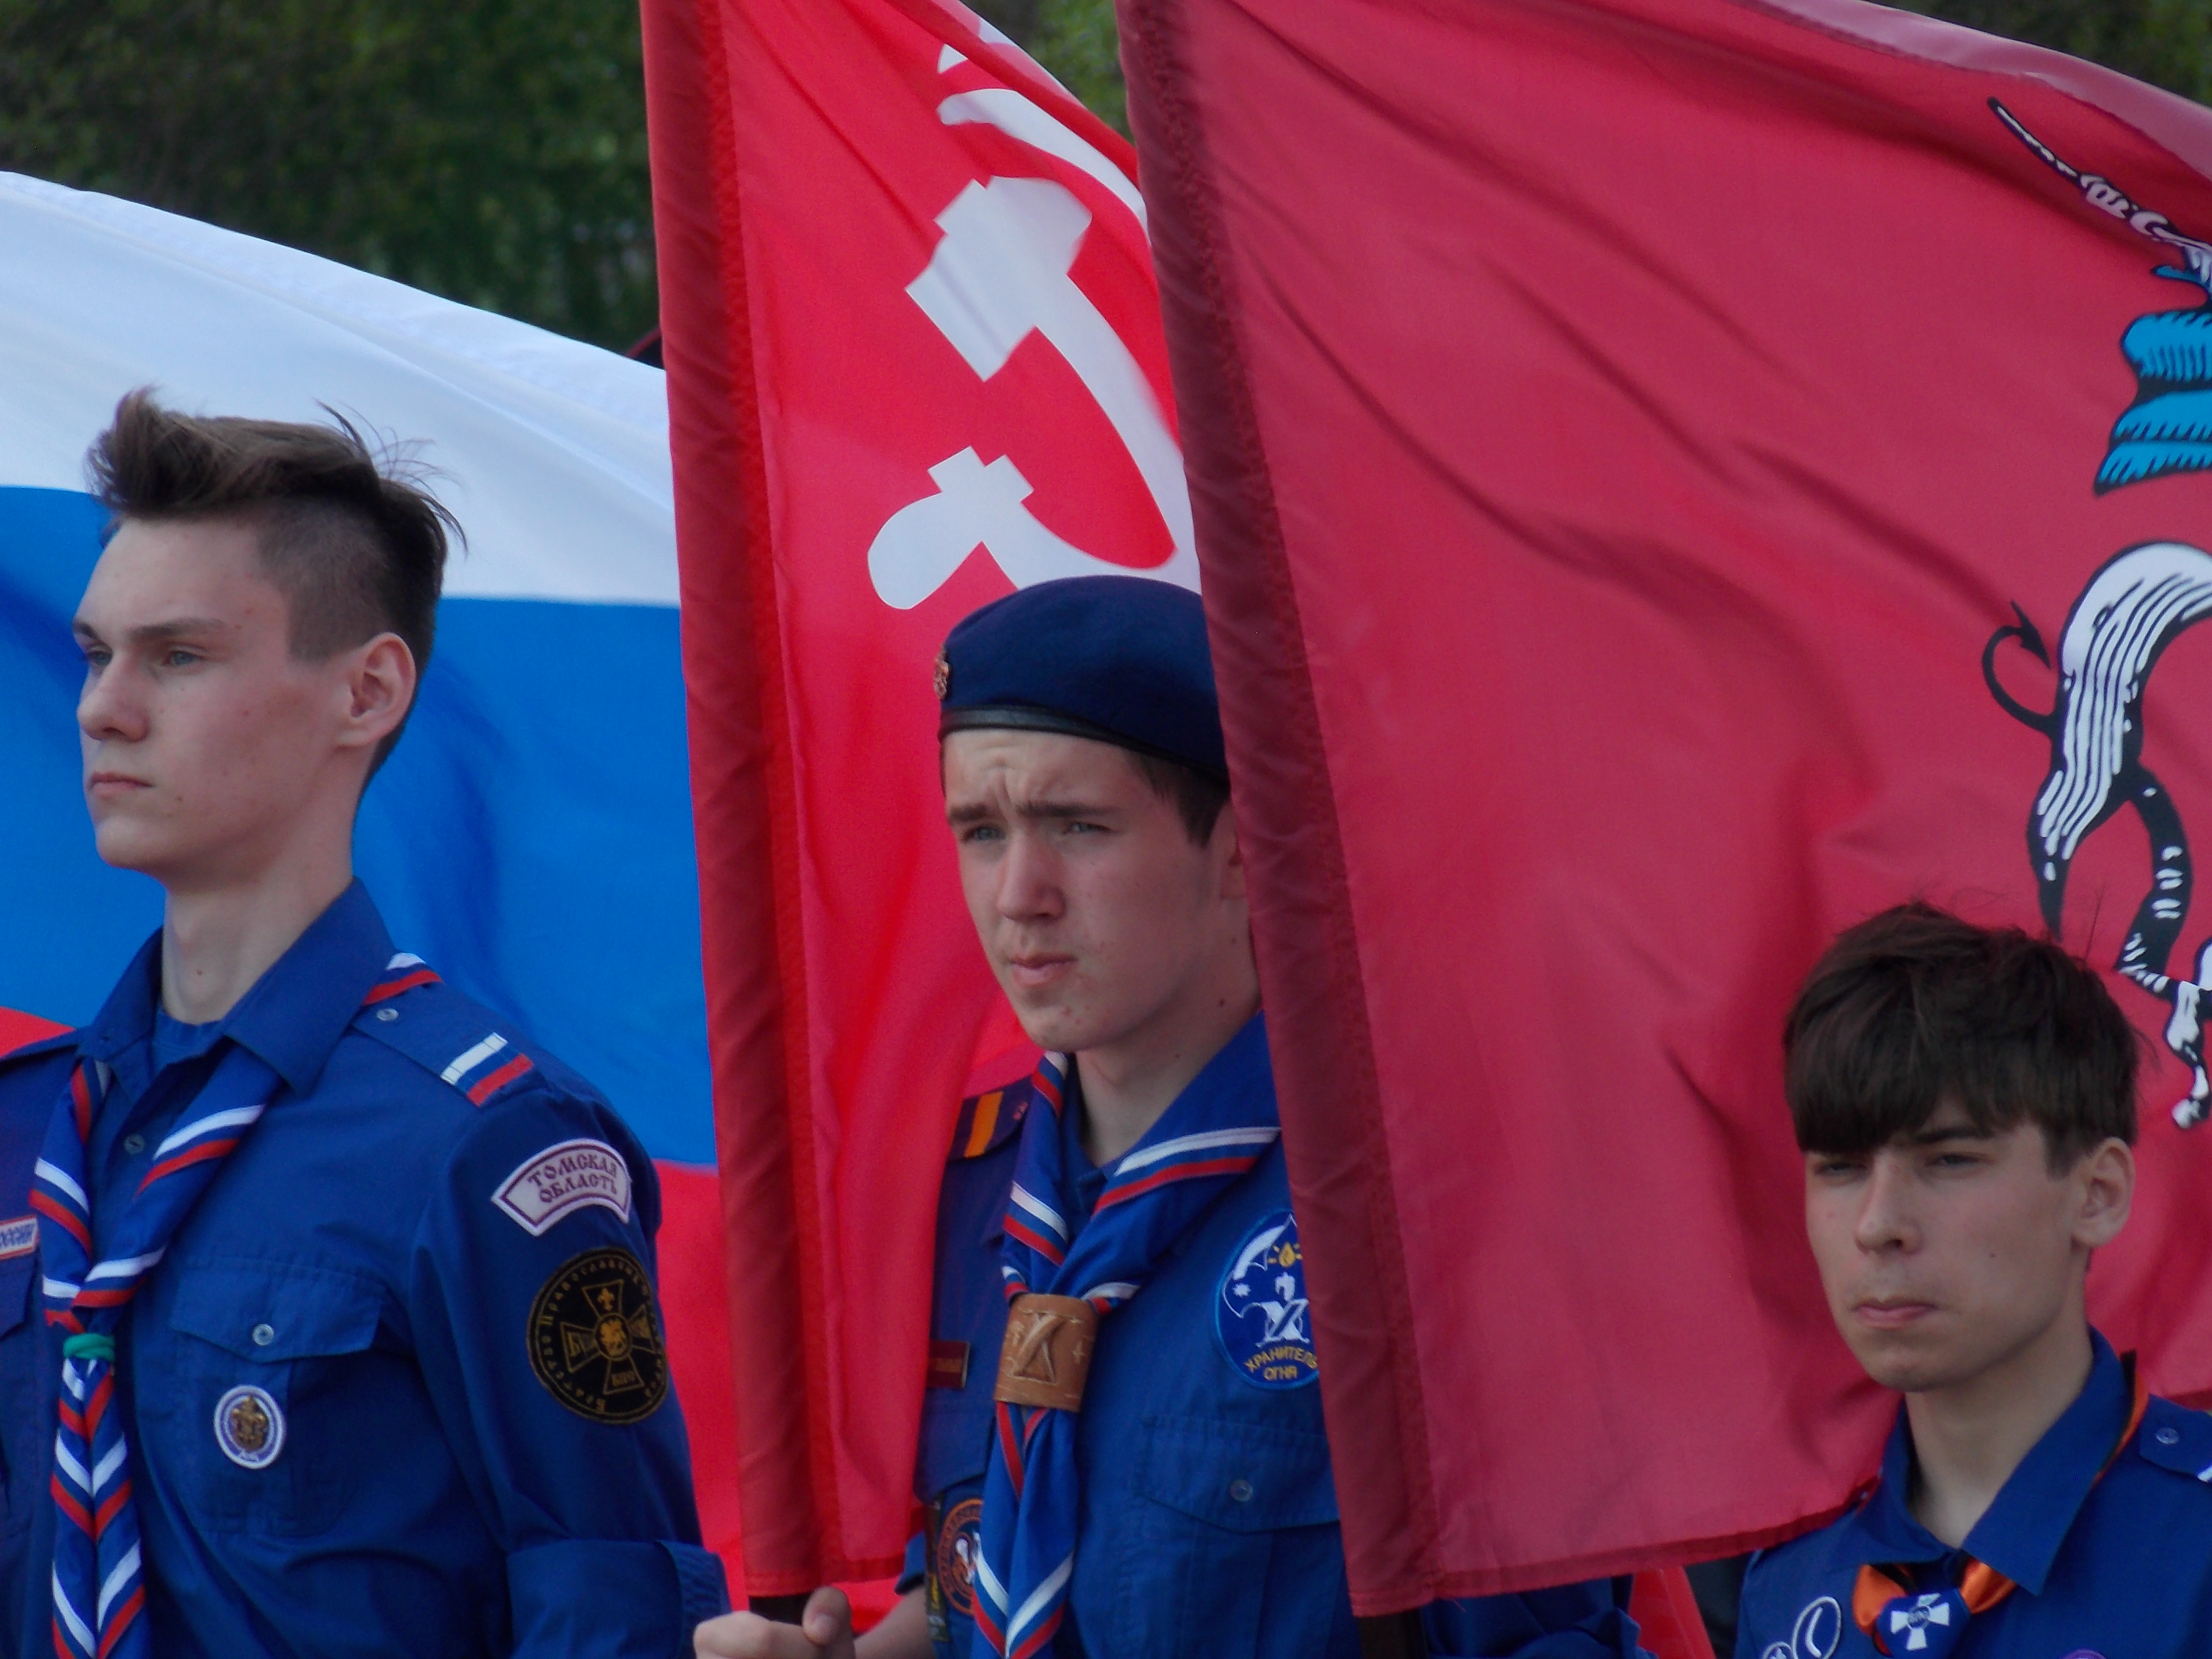 Следопыты Волоколамского отряда БПС приняли участие в Георгиевском параде в Москве